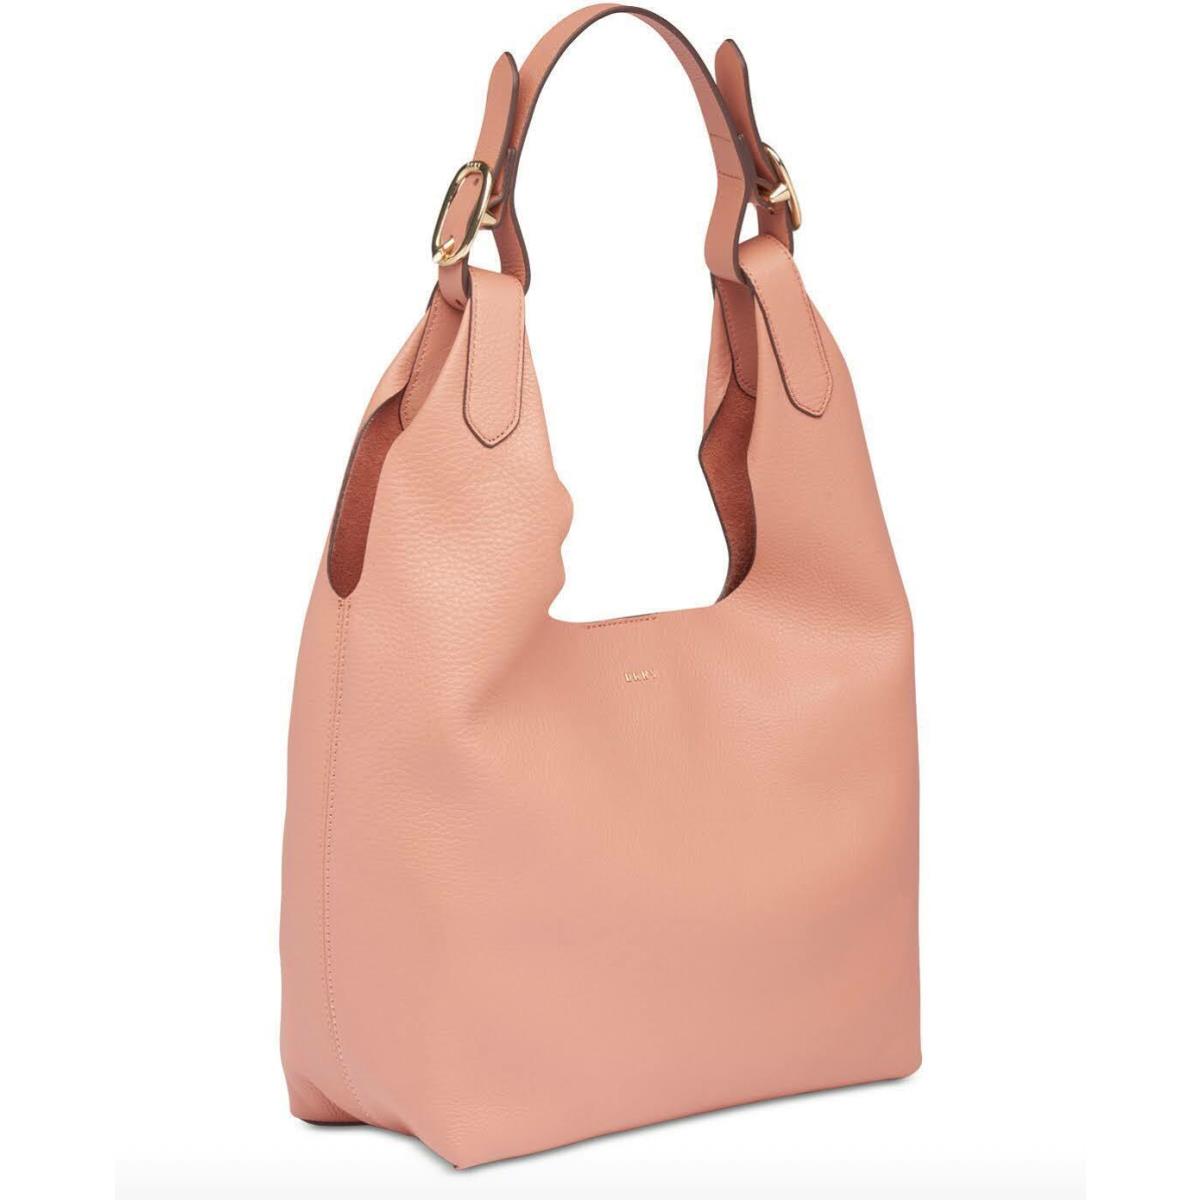 Dkny Wes Hobo Coral Medium Shoulder Bag Tote Handbag Purse Pebbled Leather